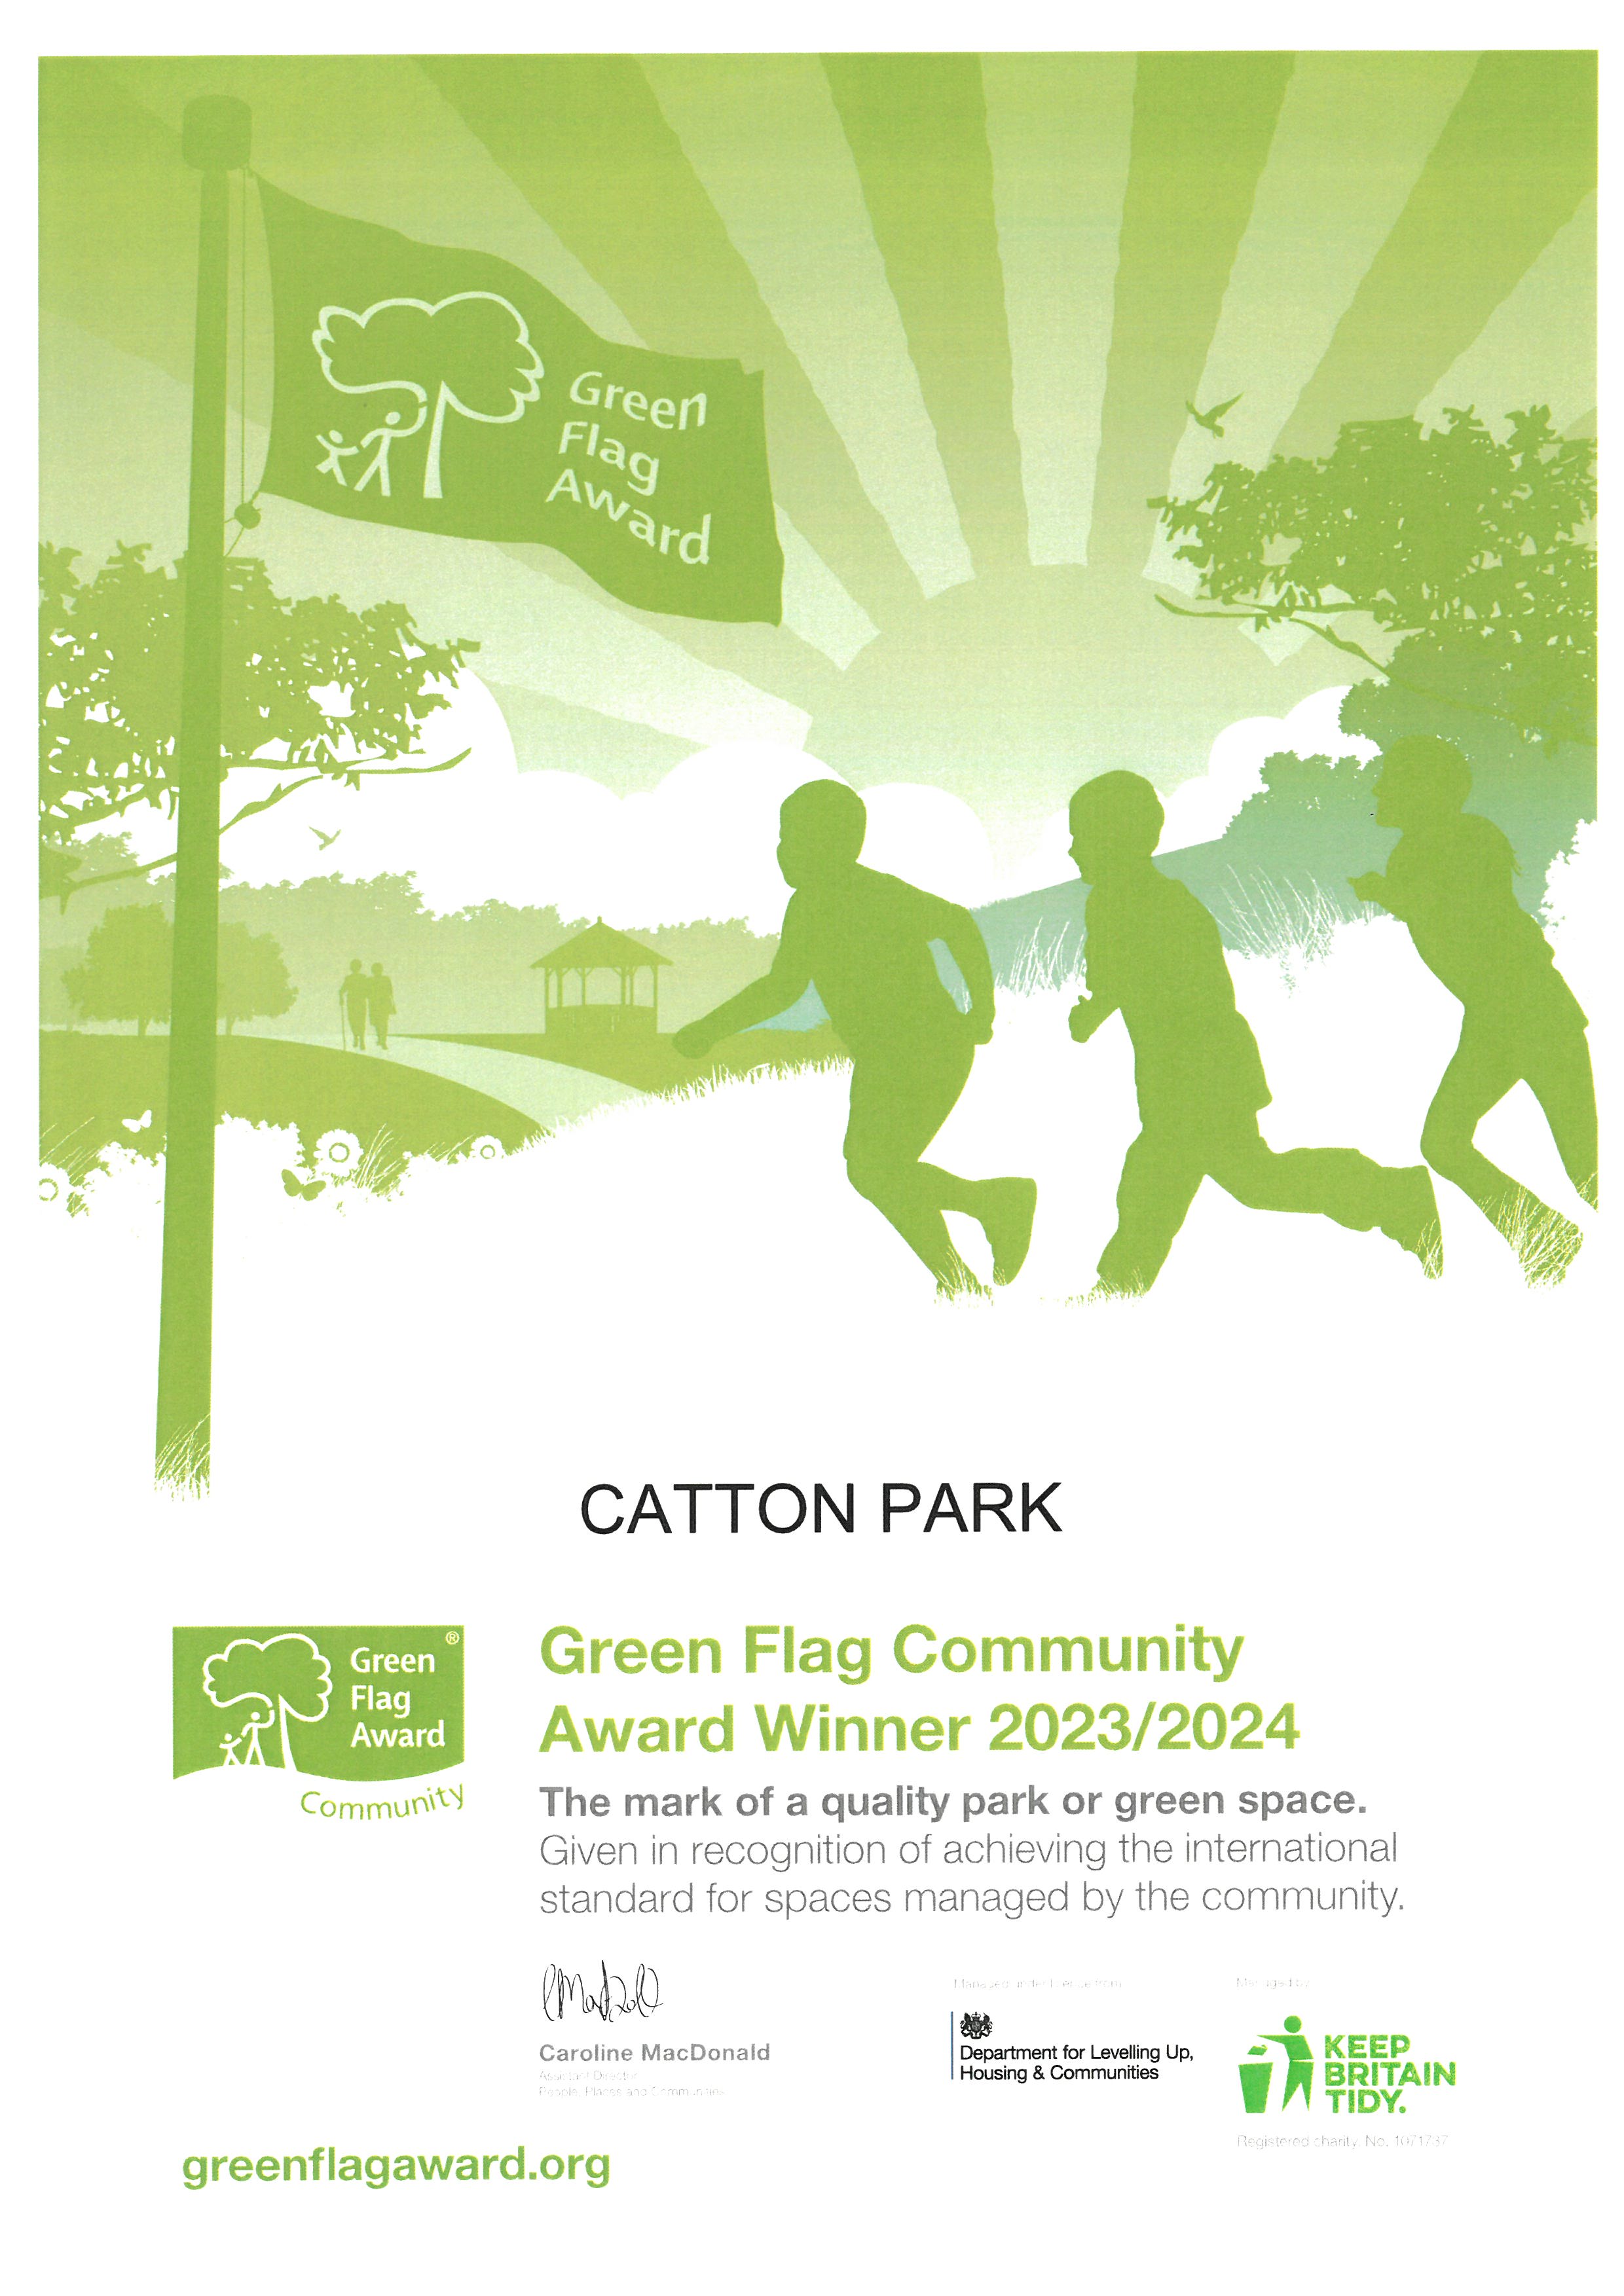 GREEN FLAG COMMUNITY AWARD - WE DID IT AGAIN!